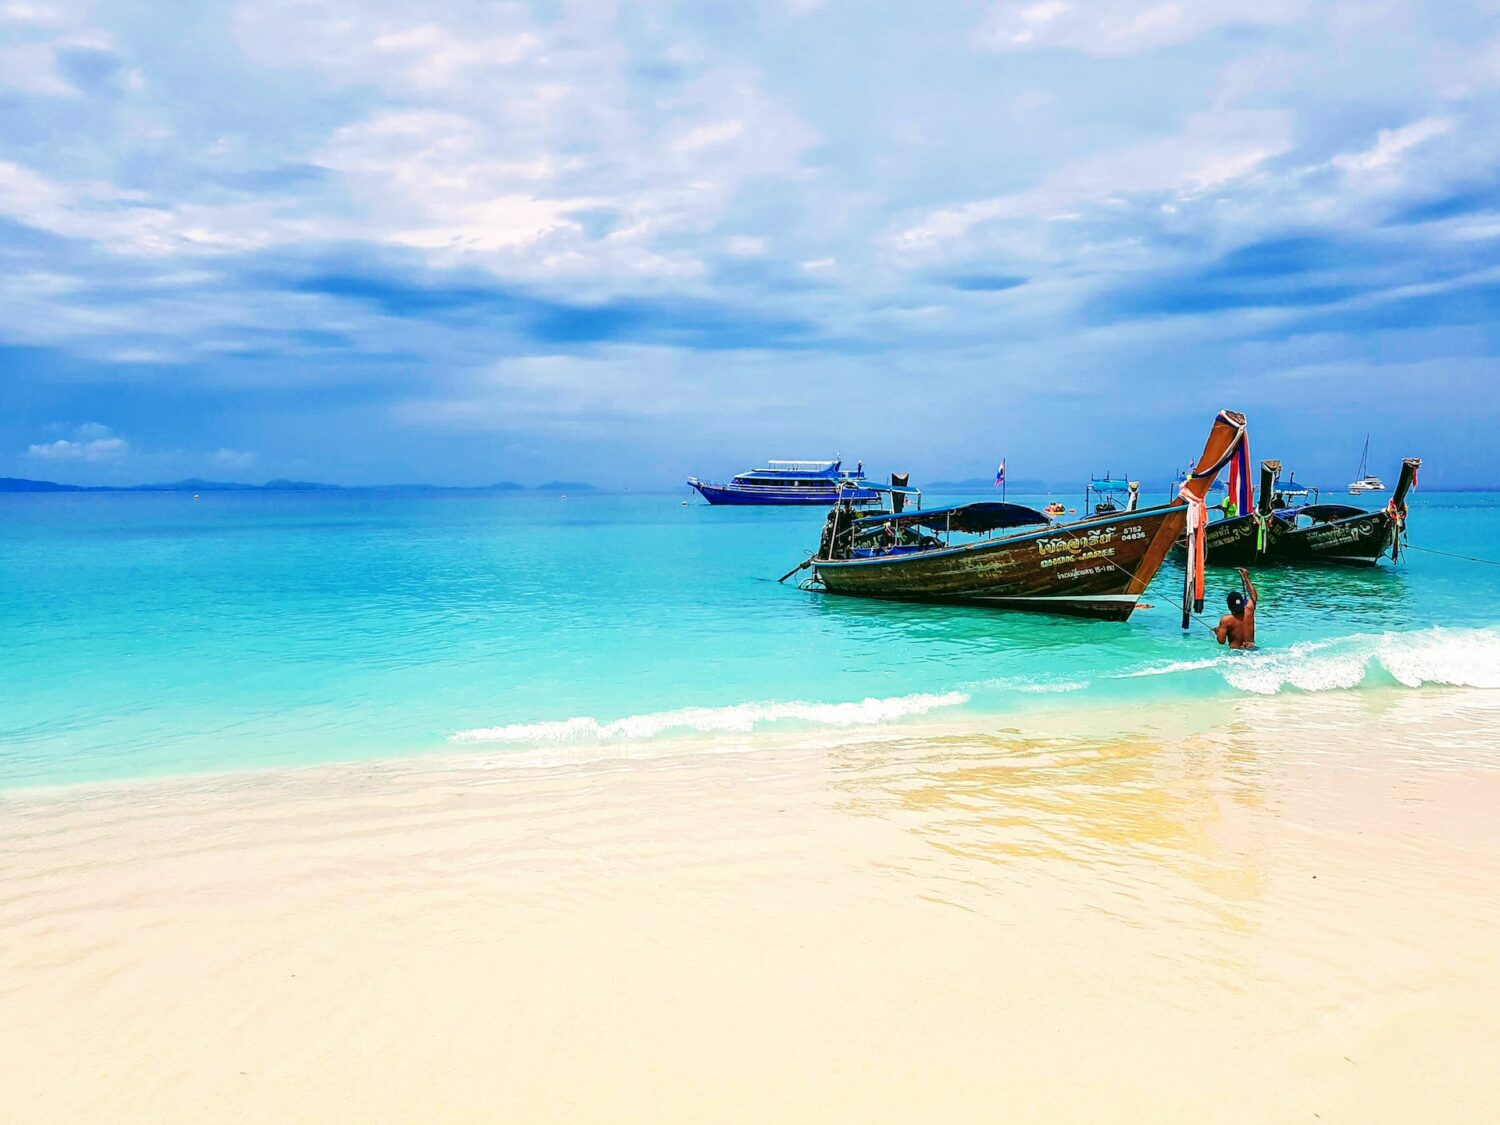 Praia com águas cristalinas em Phuket, com uma faixa de areia branca, ao lado no mar uma canoa, céu azul com algumas nuvens.